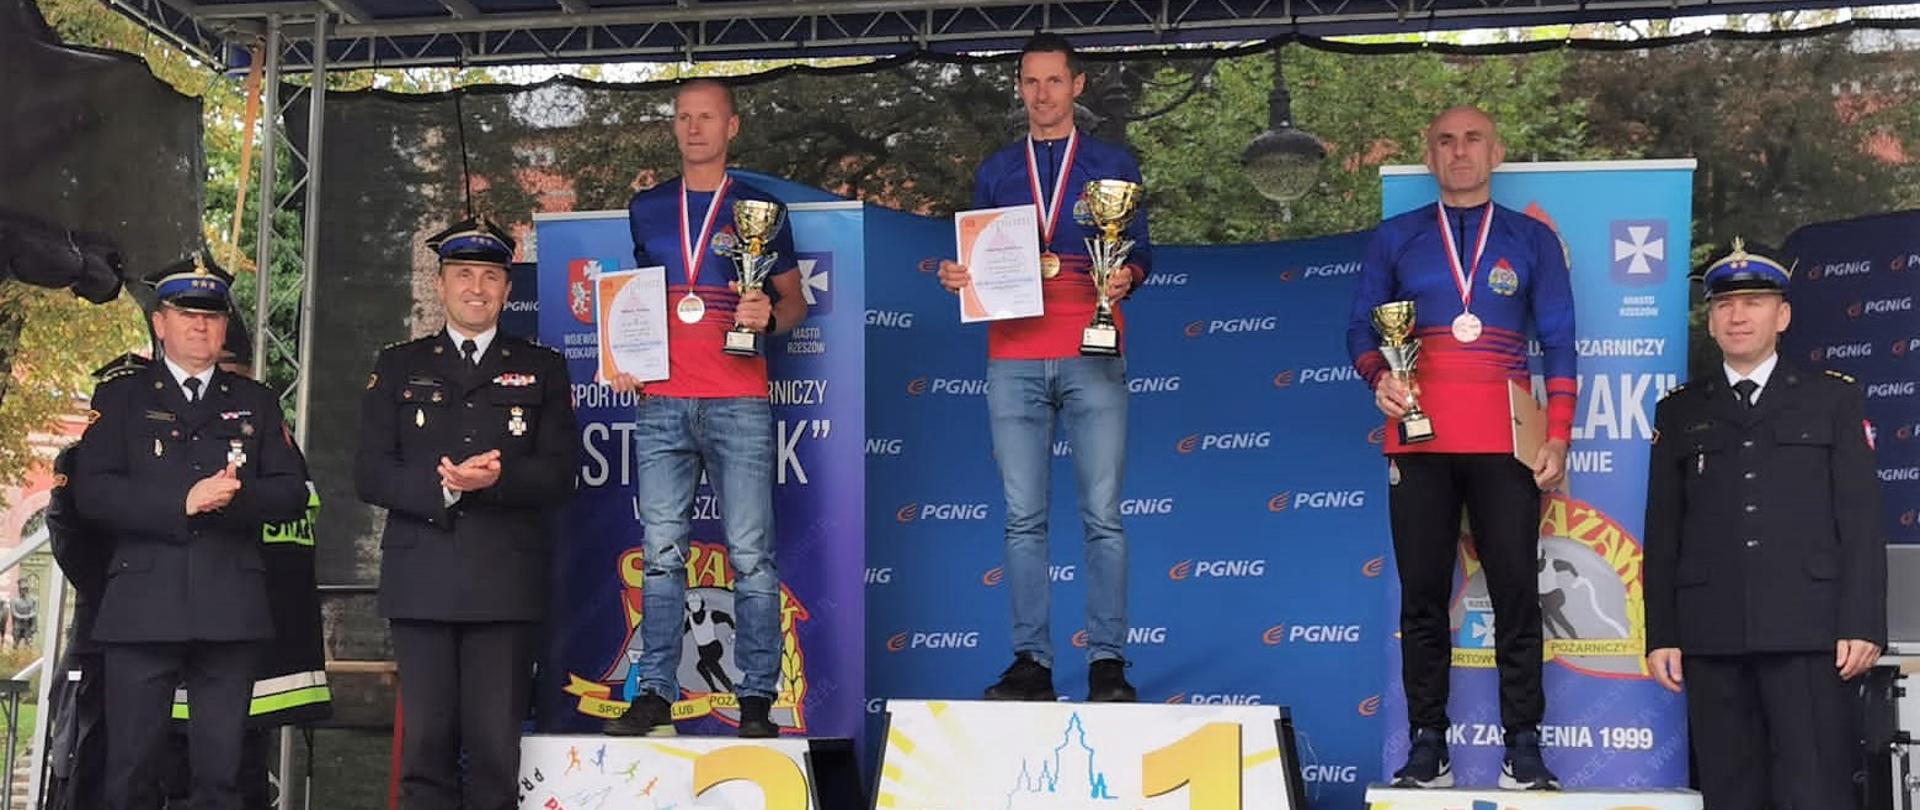 Zdjęcie przedstawia podium, na którym stoją zwycięzcy kategorii C tegorocznych Mistrzostw Polski Strażaków w Biegu Ulicznym.